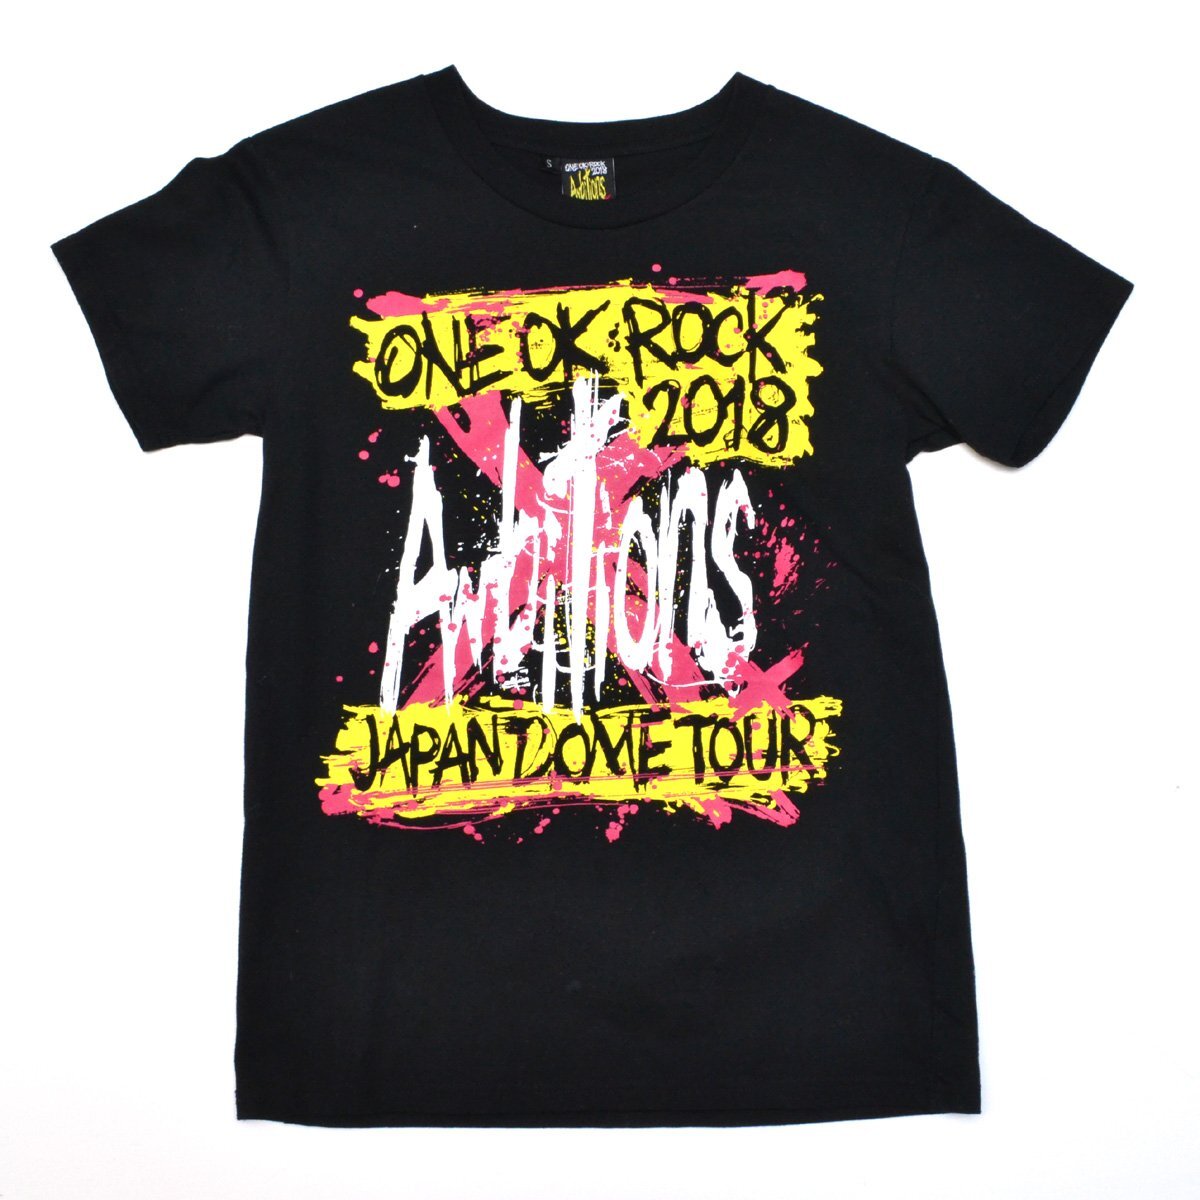 ONE OK ROCK ワンオクロック 2018 JAPAN DOME TOUR Tシャツ Sサイズ トップス L794701の画像1